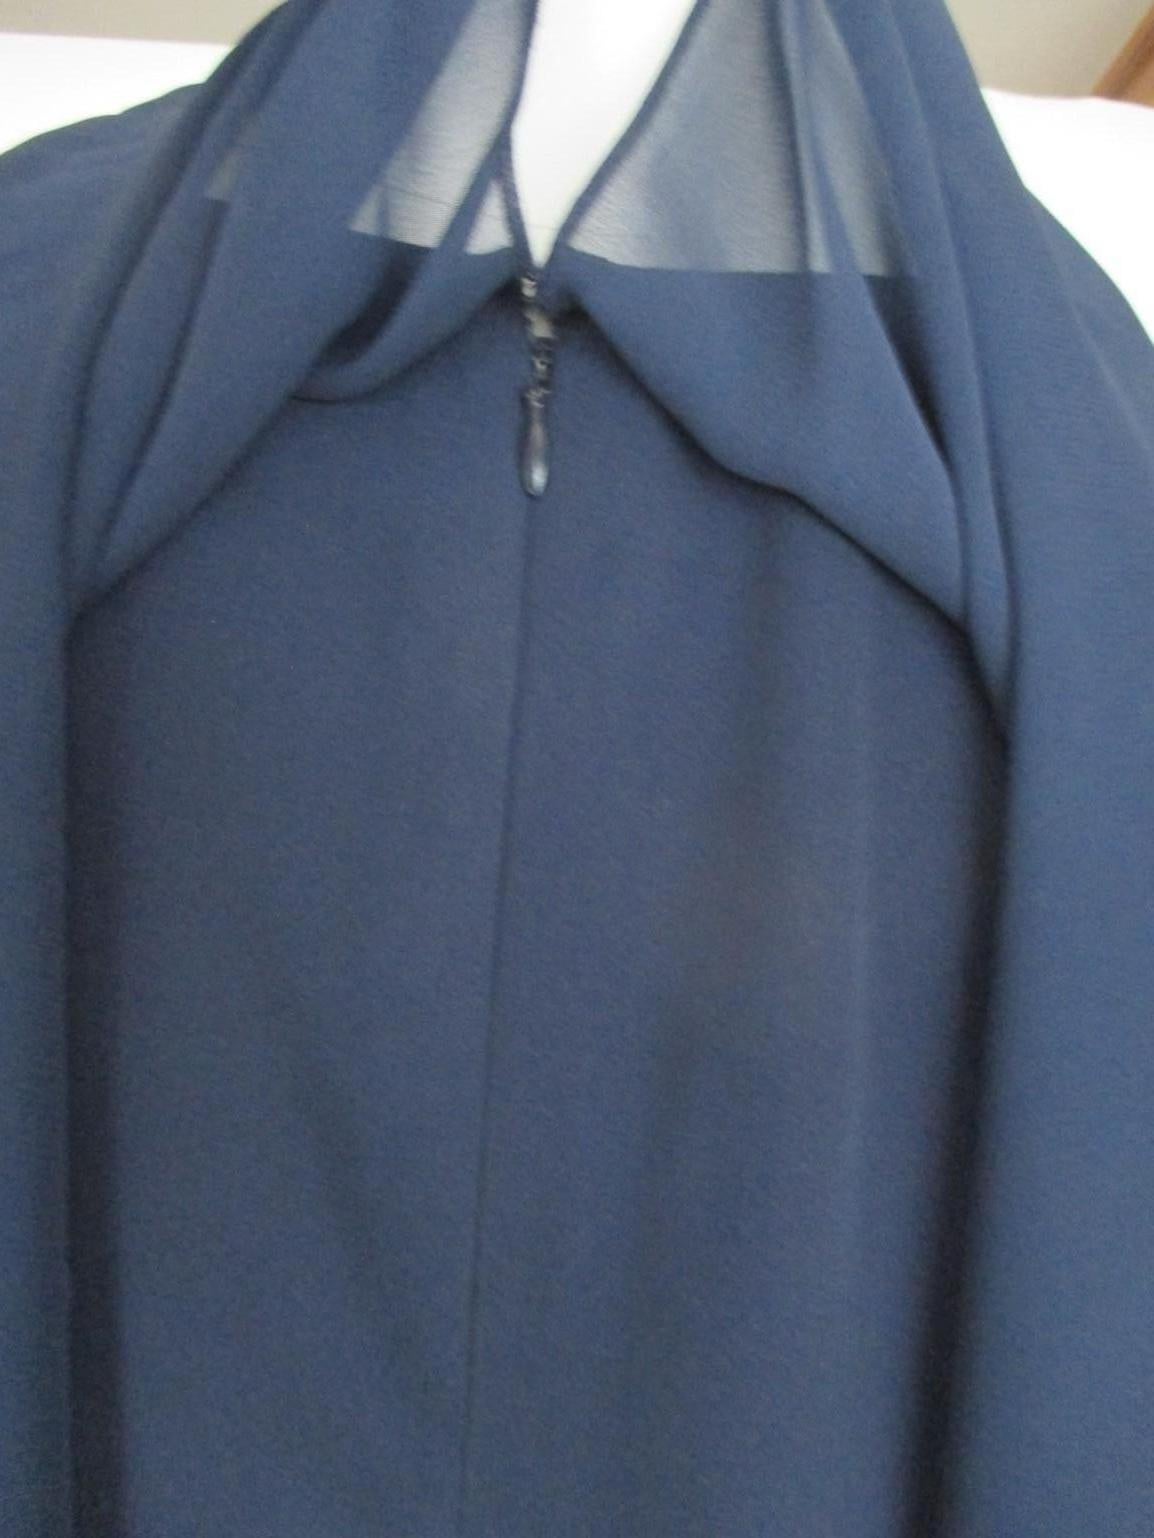 Nina Ricci Paris blue cocktail dress For Sale 2